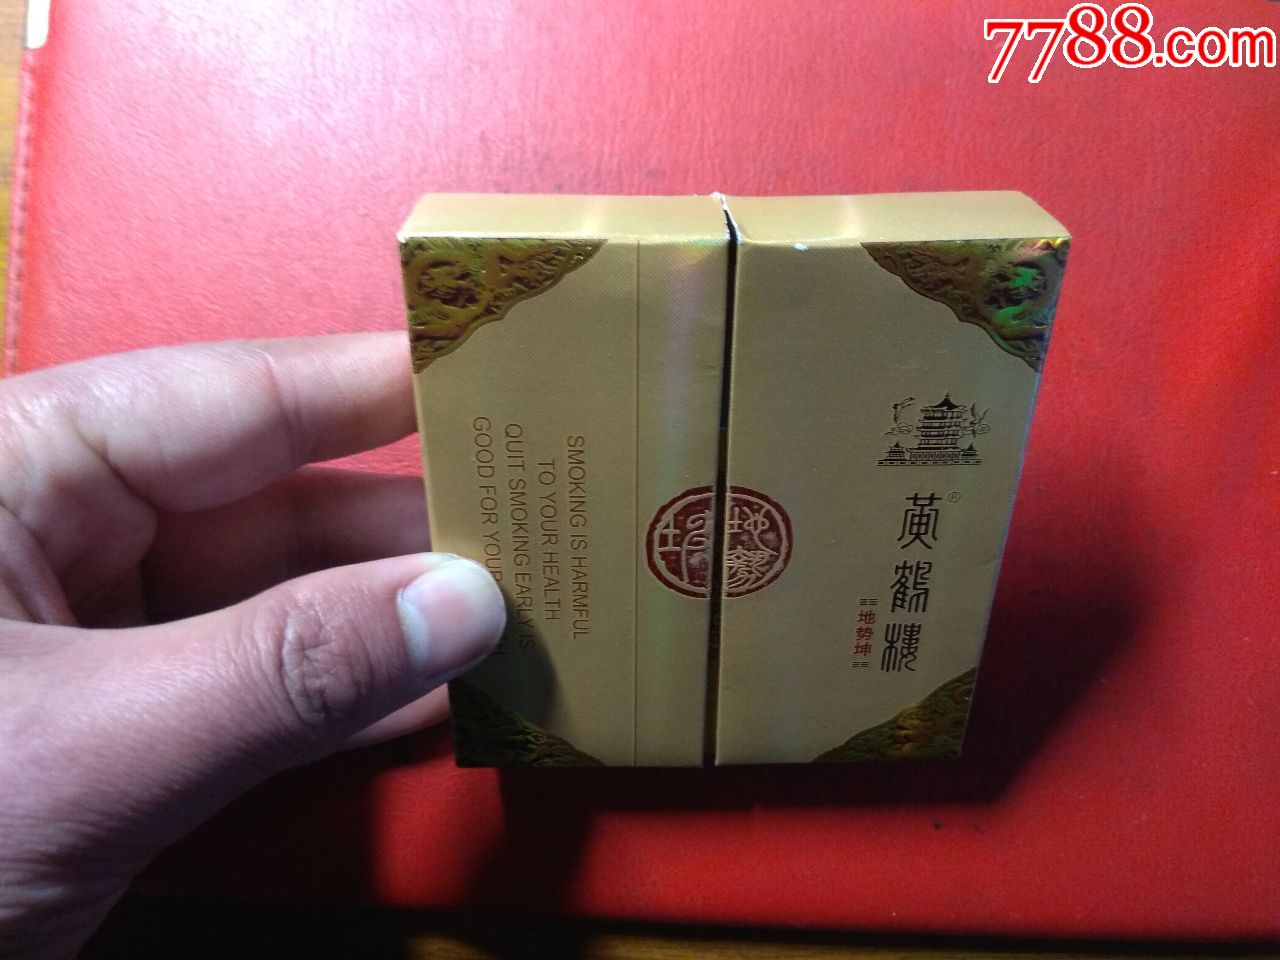 黄鹤楼地势坤-价格:5.0000元-au19643943-烟标/烟盒